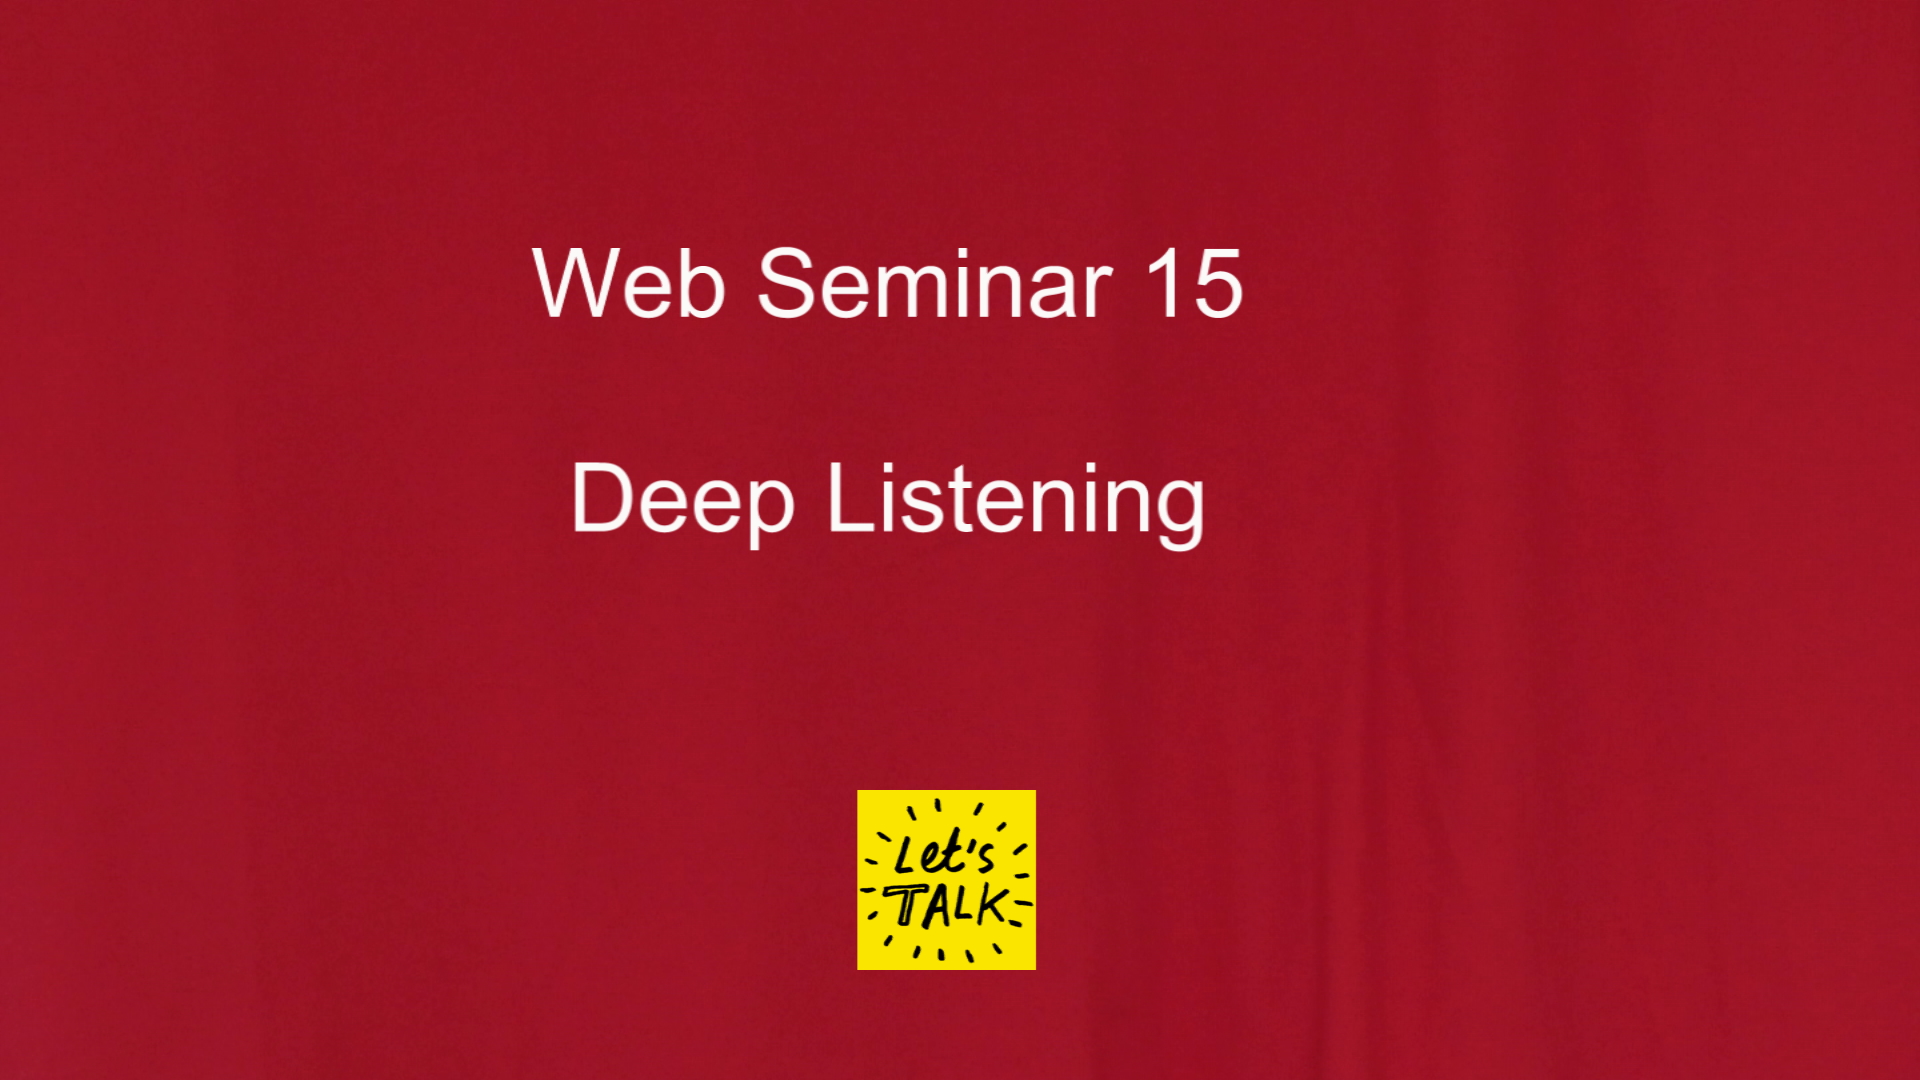 Web Seminar 15 - Deep Listening